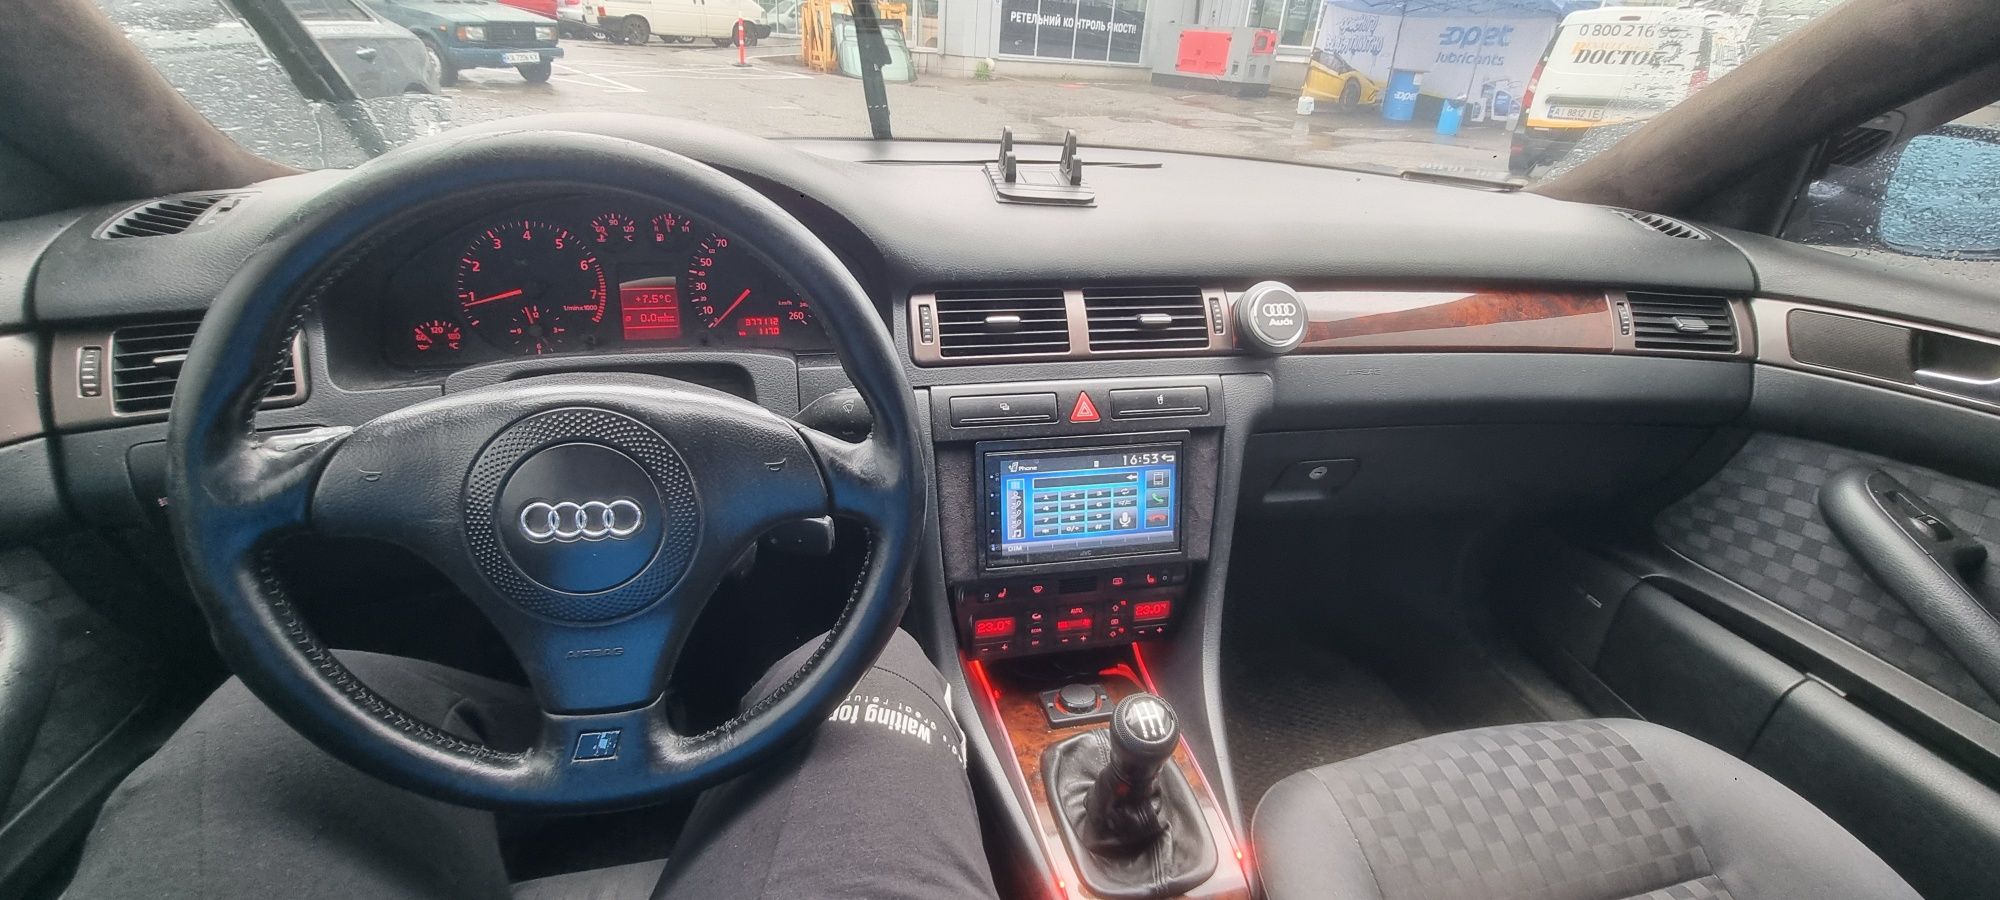 Продам Audi A6 C5 1997